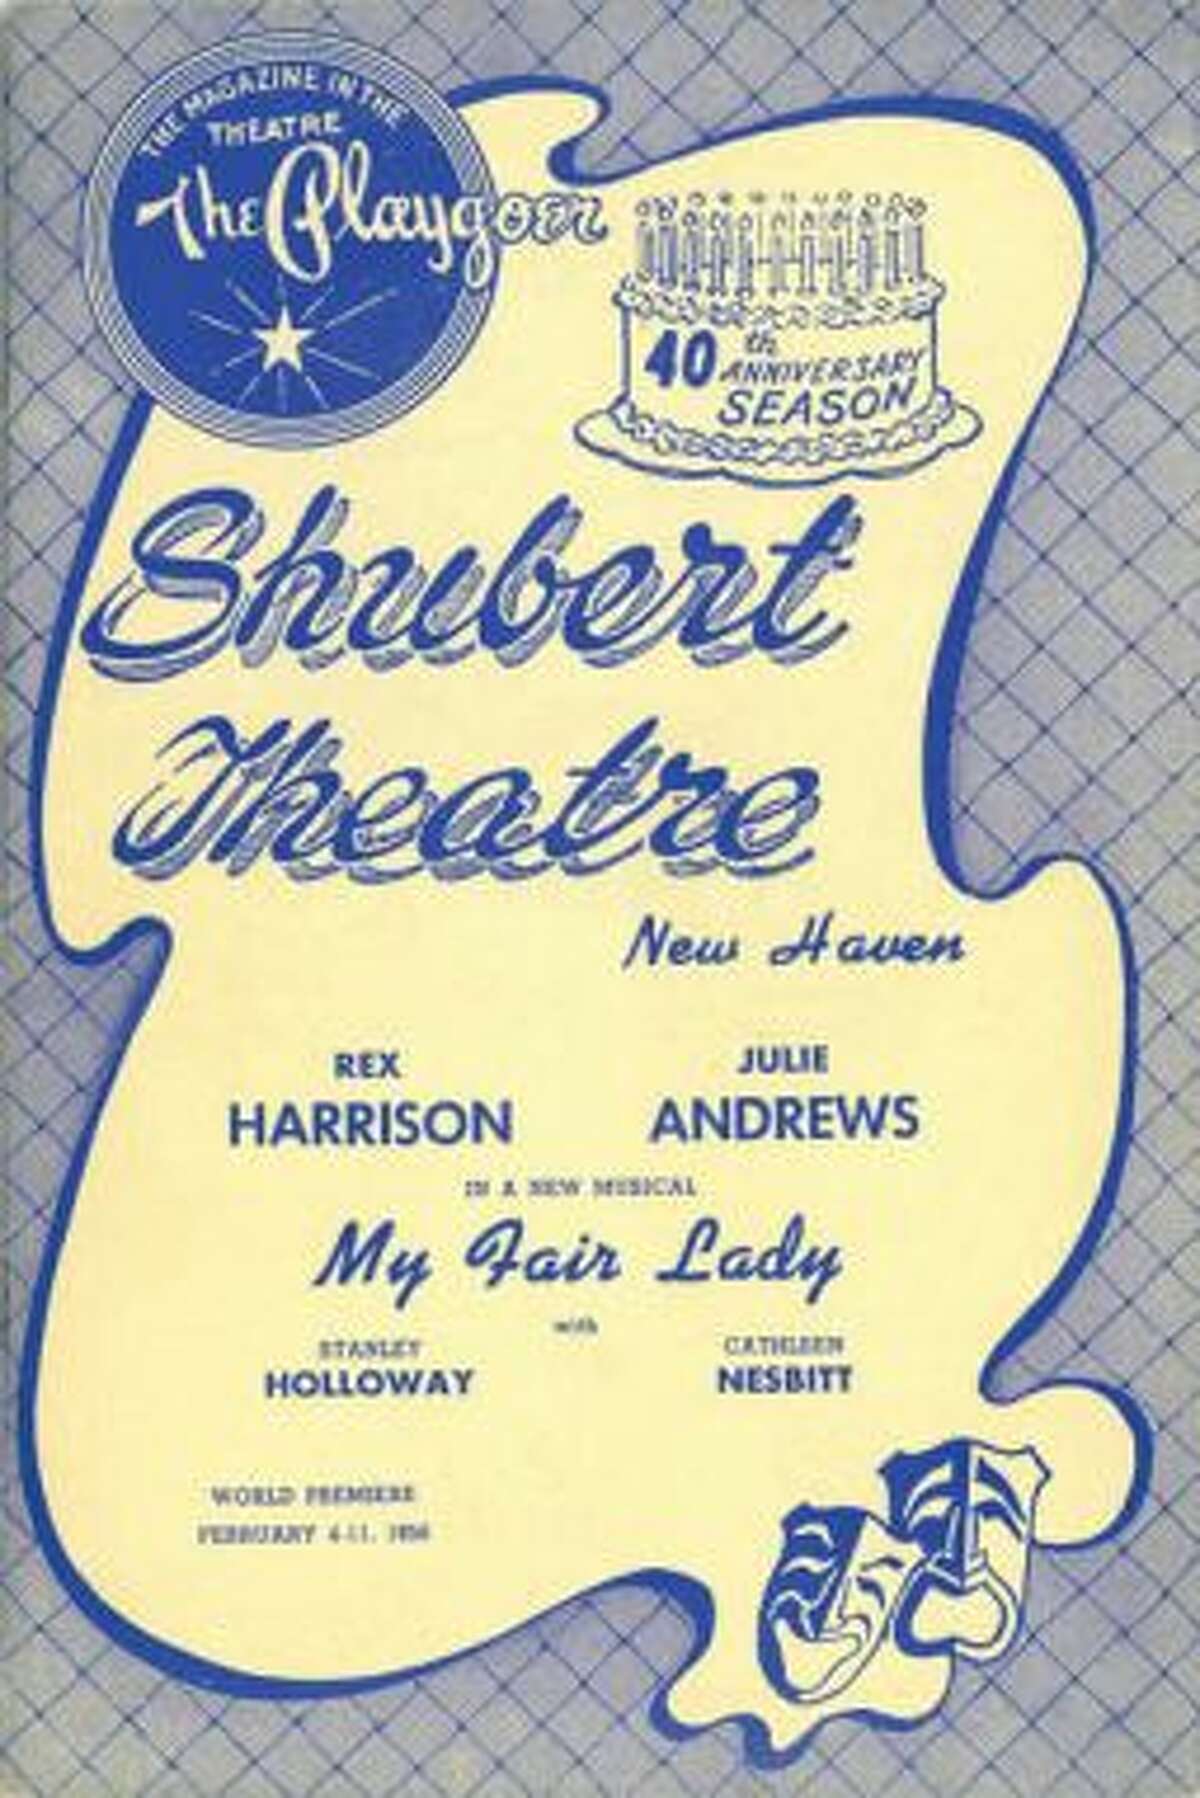 The "My Fair Lady" playbill, 1956